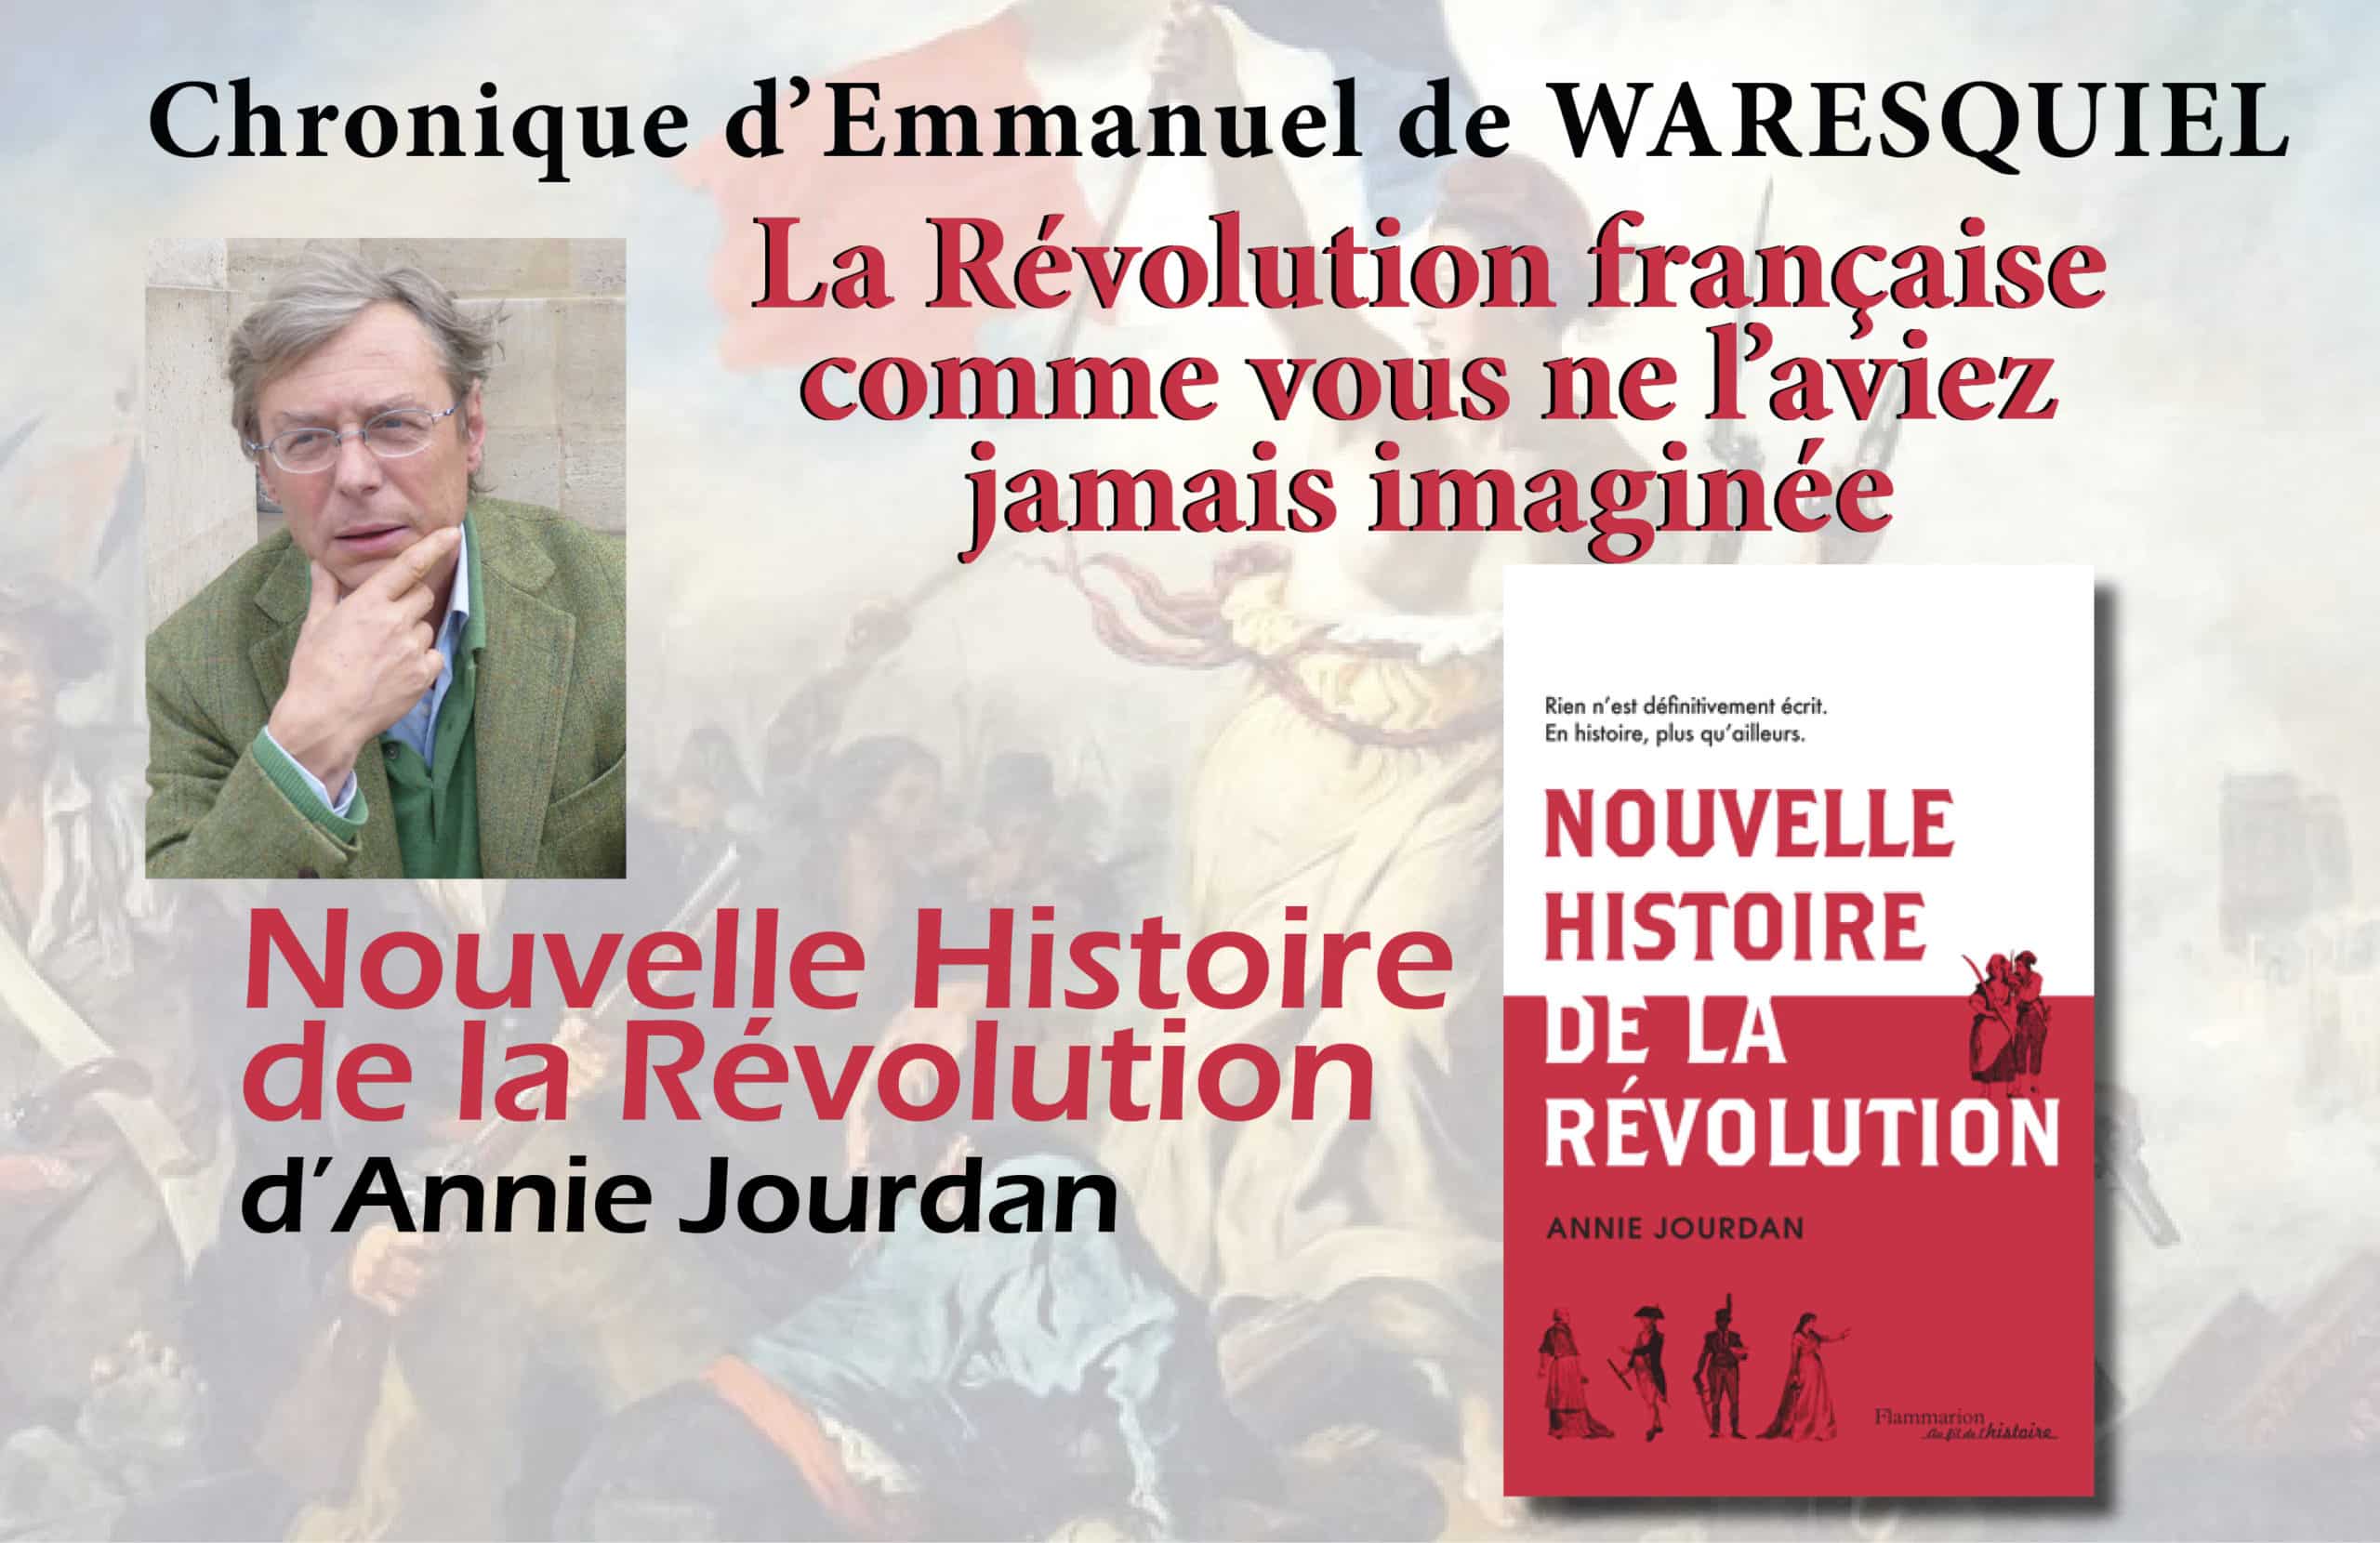 Chronique d’Emmanuel de Waresquiel : la Révolution française comme vous ne l’aviez jamais imaginée